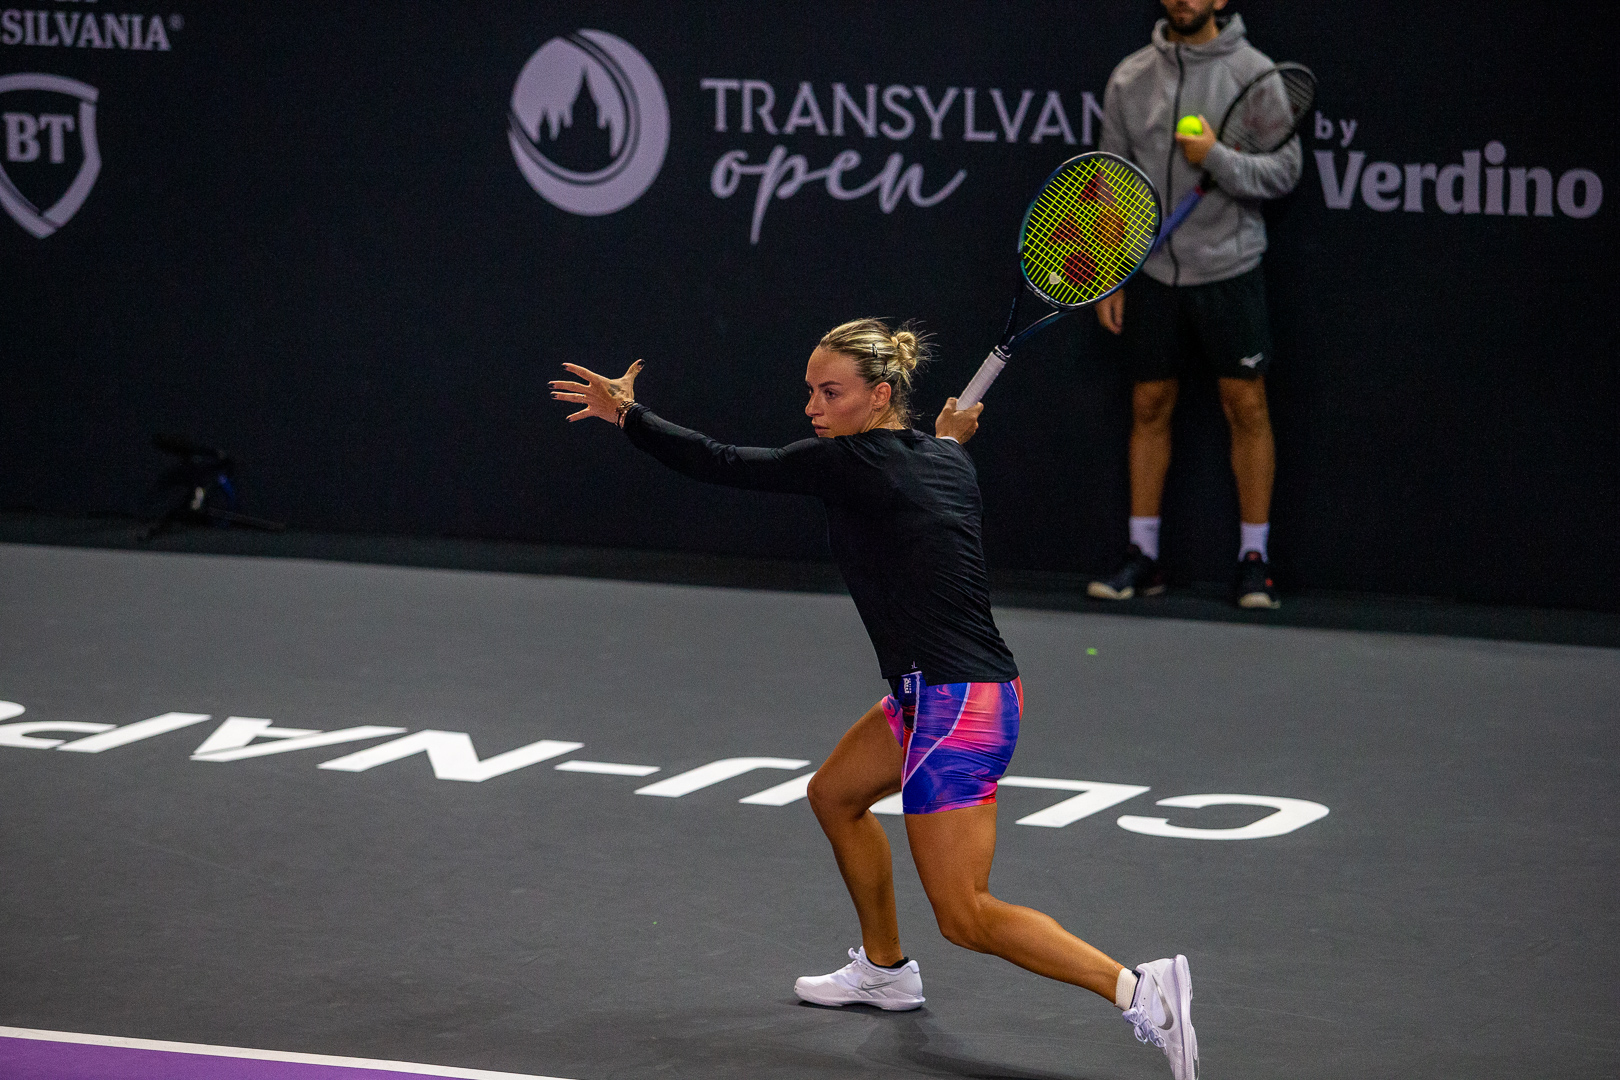 Primul tur Transylvania Open WTA250 începe luni. Ana Bogdan o va întâlni pe teren pe Jule Niemeier. FOTO: Transylvania Open